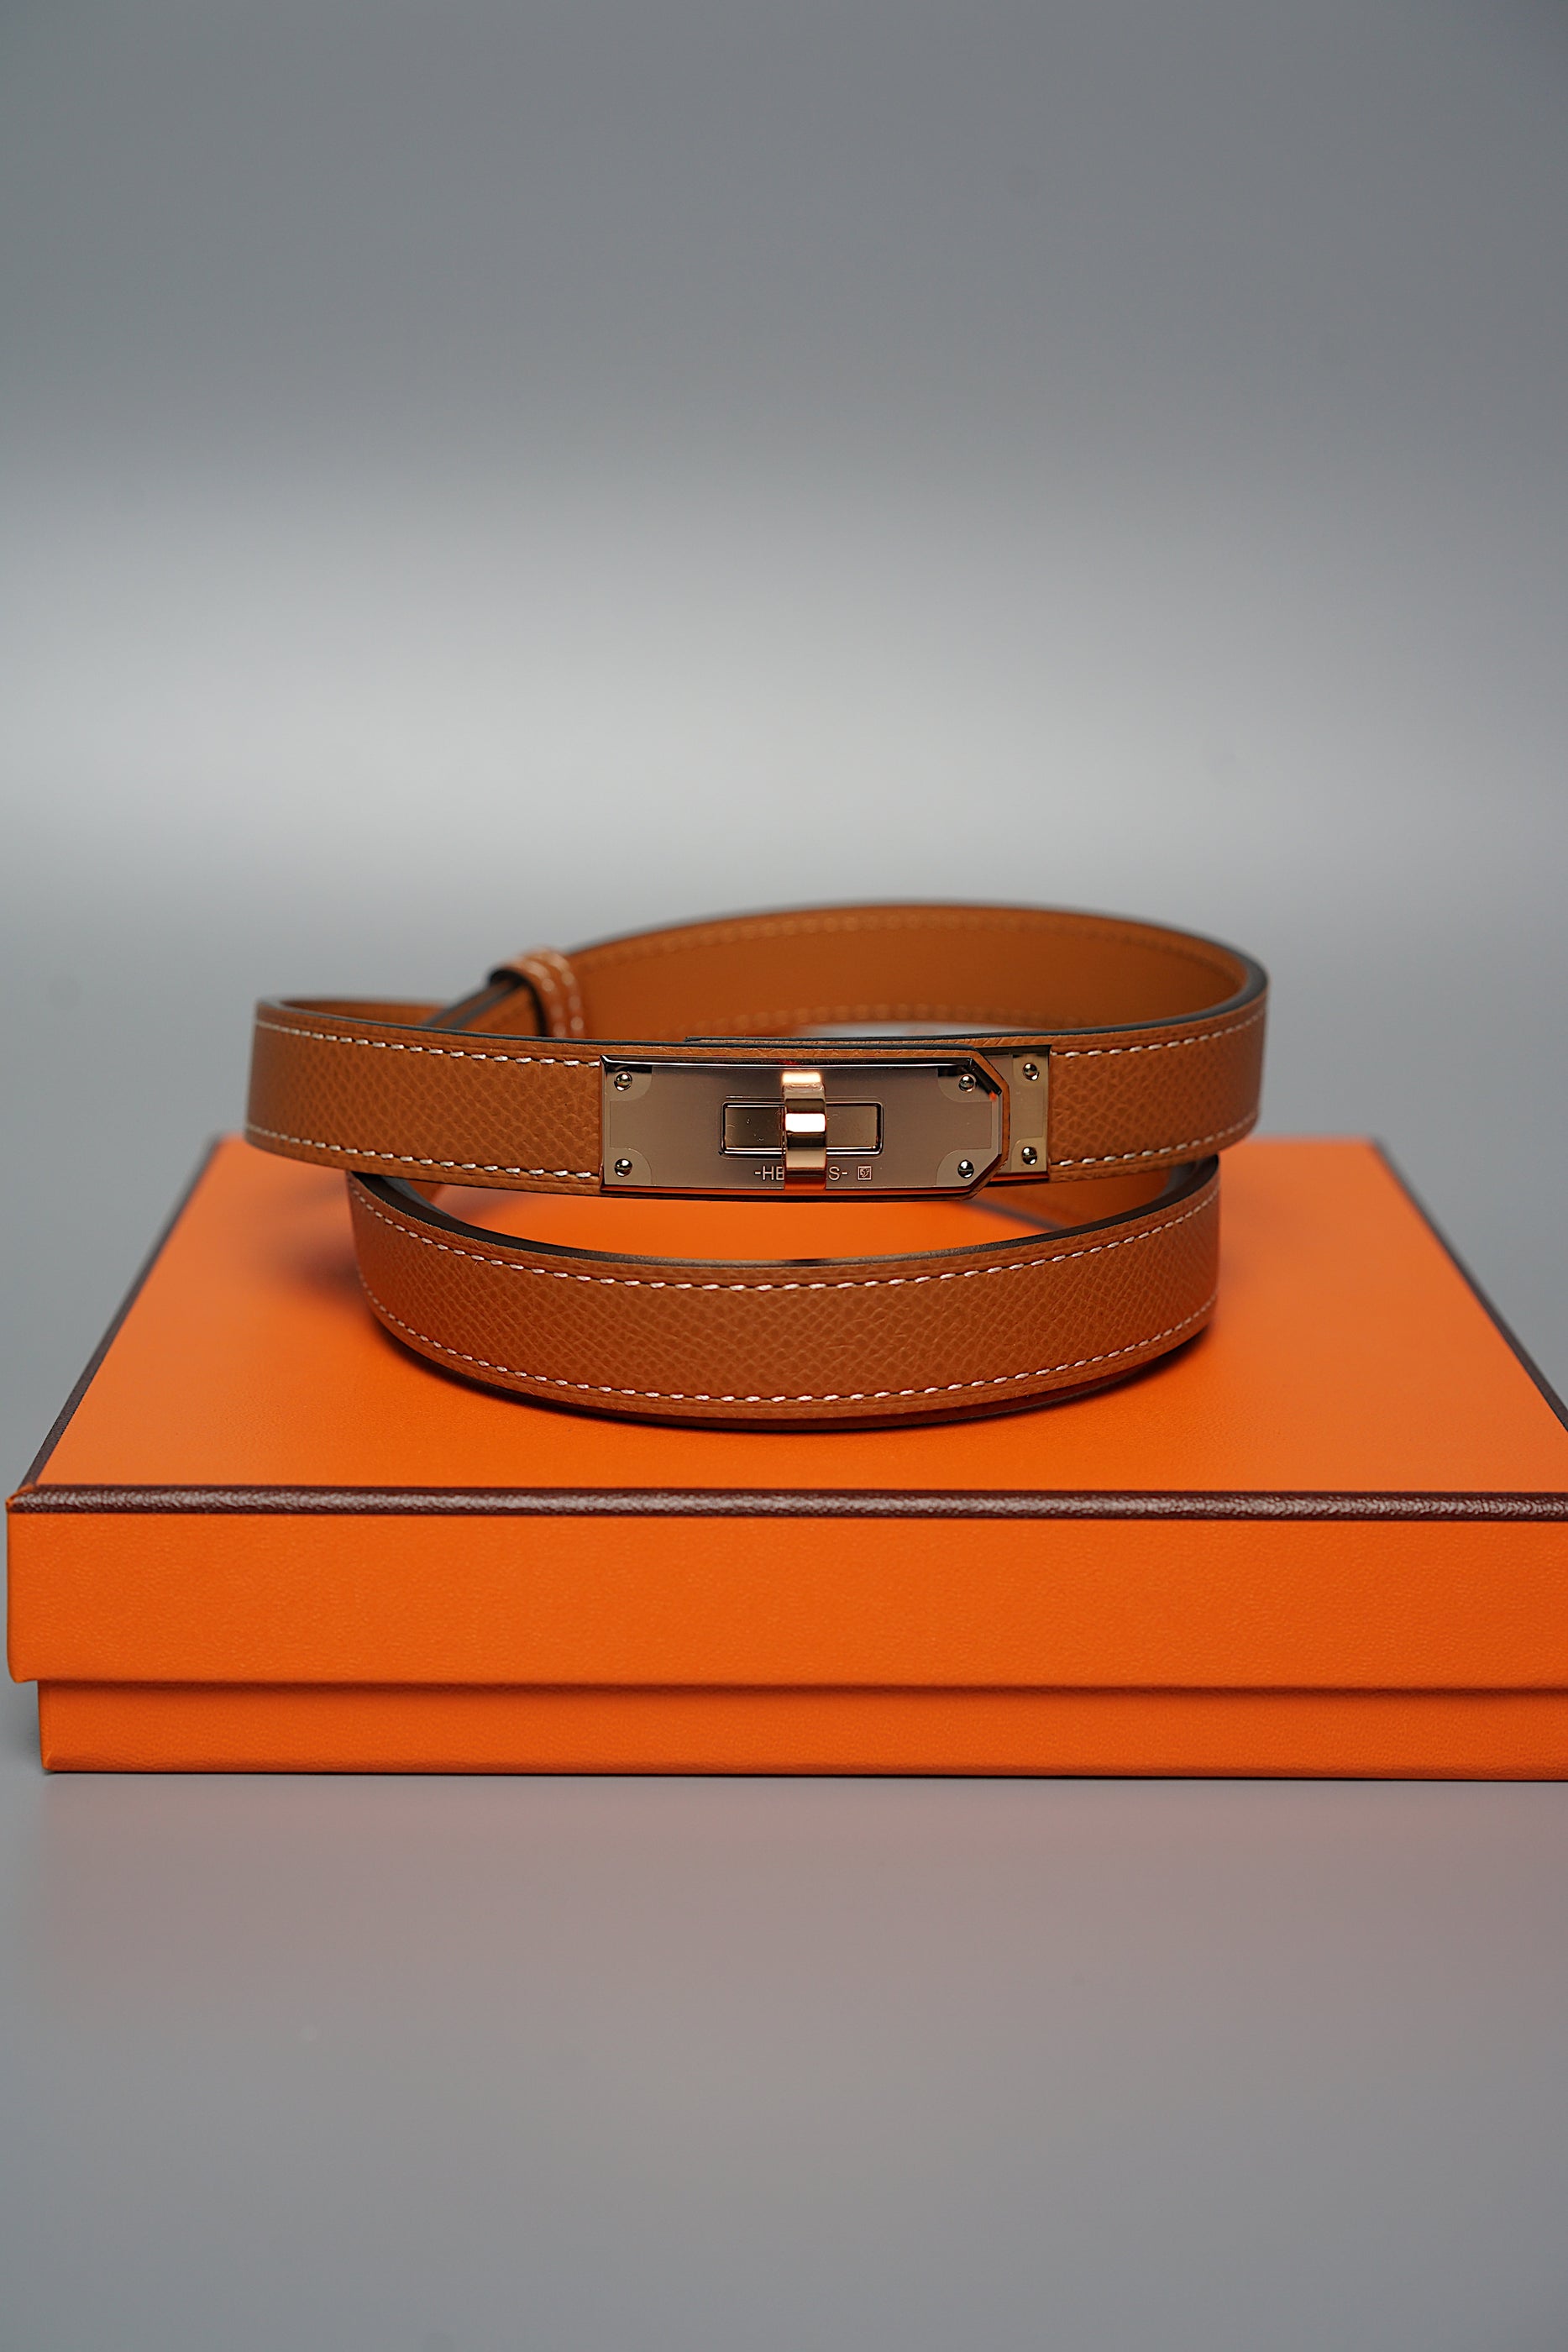 Hermes Kelly 18 Belt Gold in Rghw (Brand New)– orangeporter